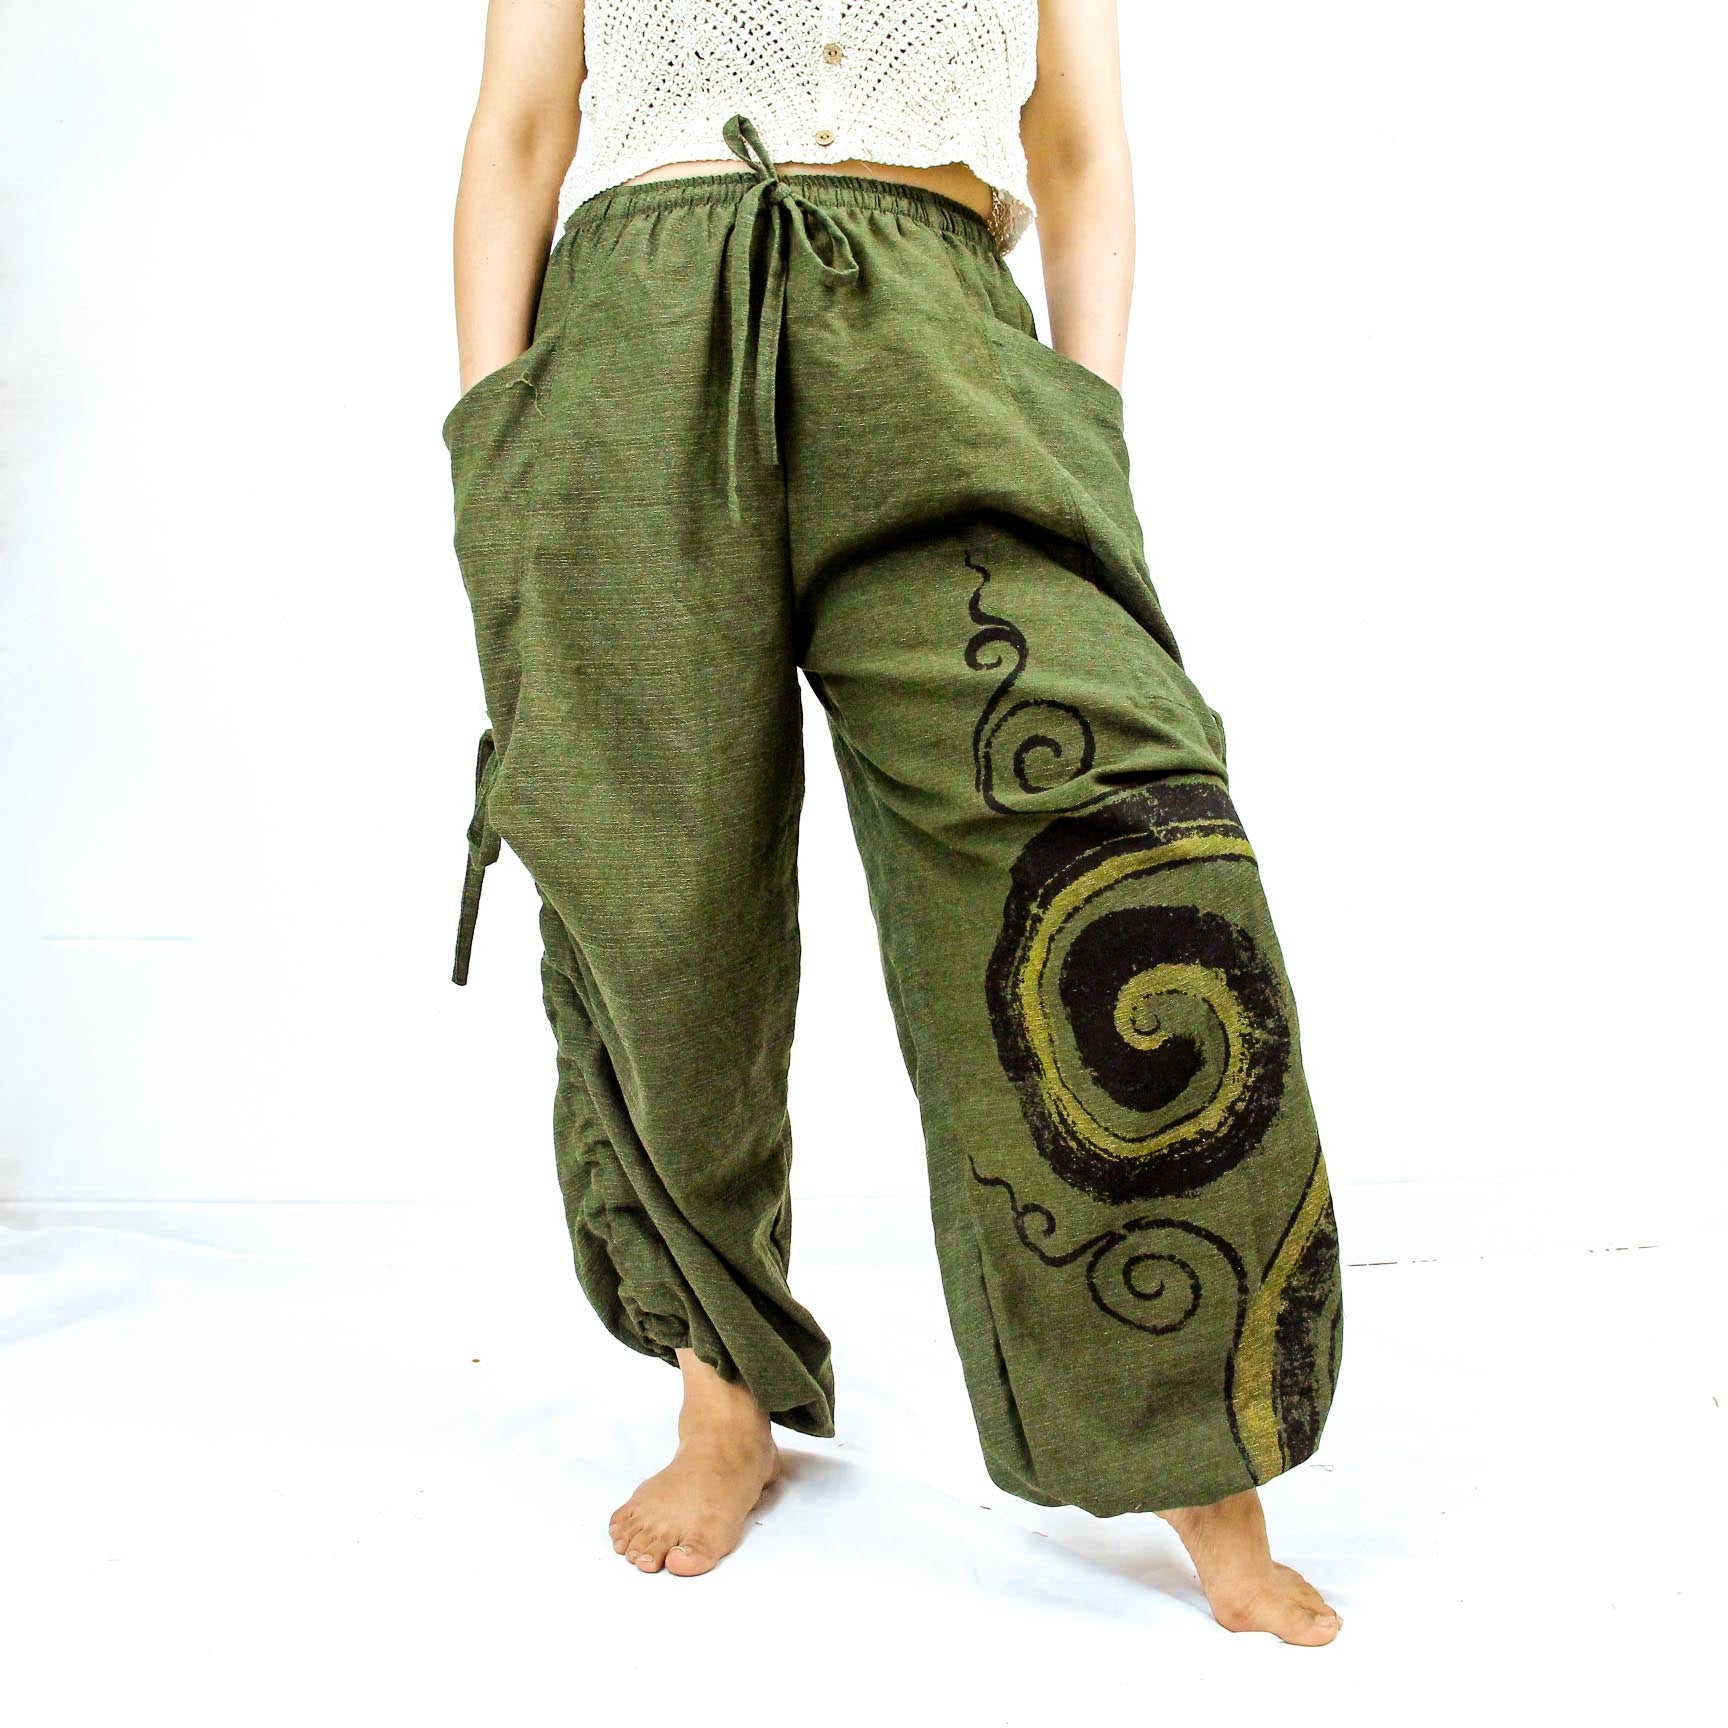 Unisex Cotton Pant with Spiral Prints, Harem Pants, Yoga Pants